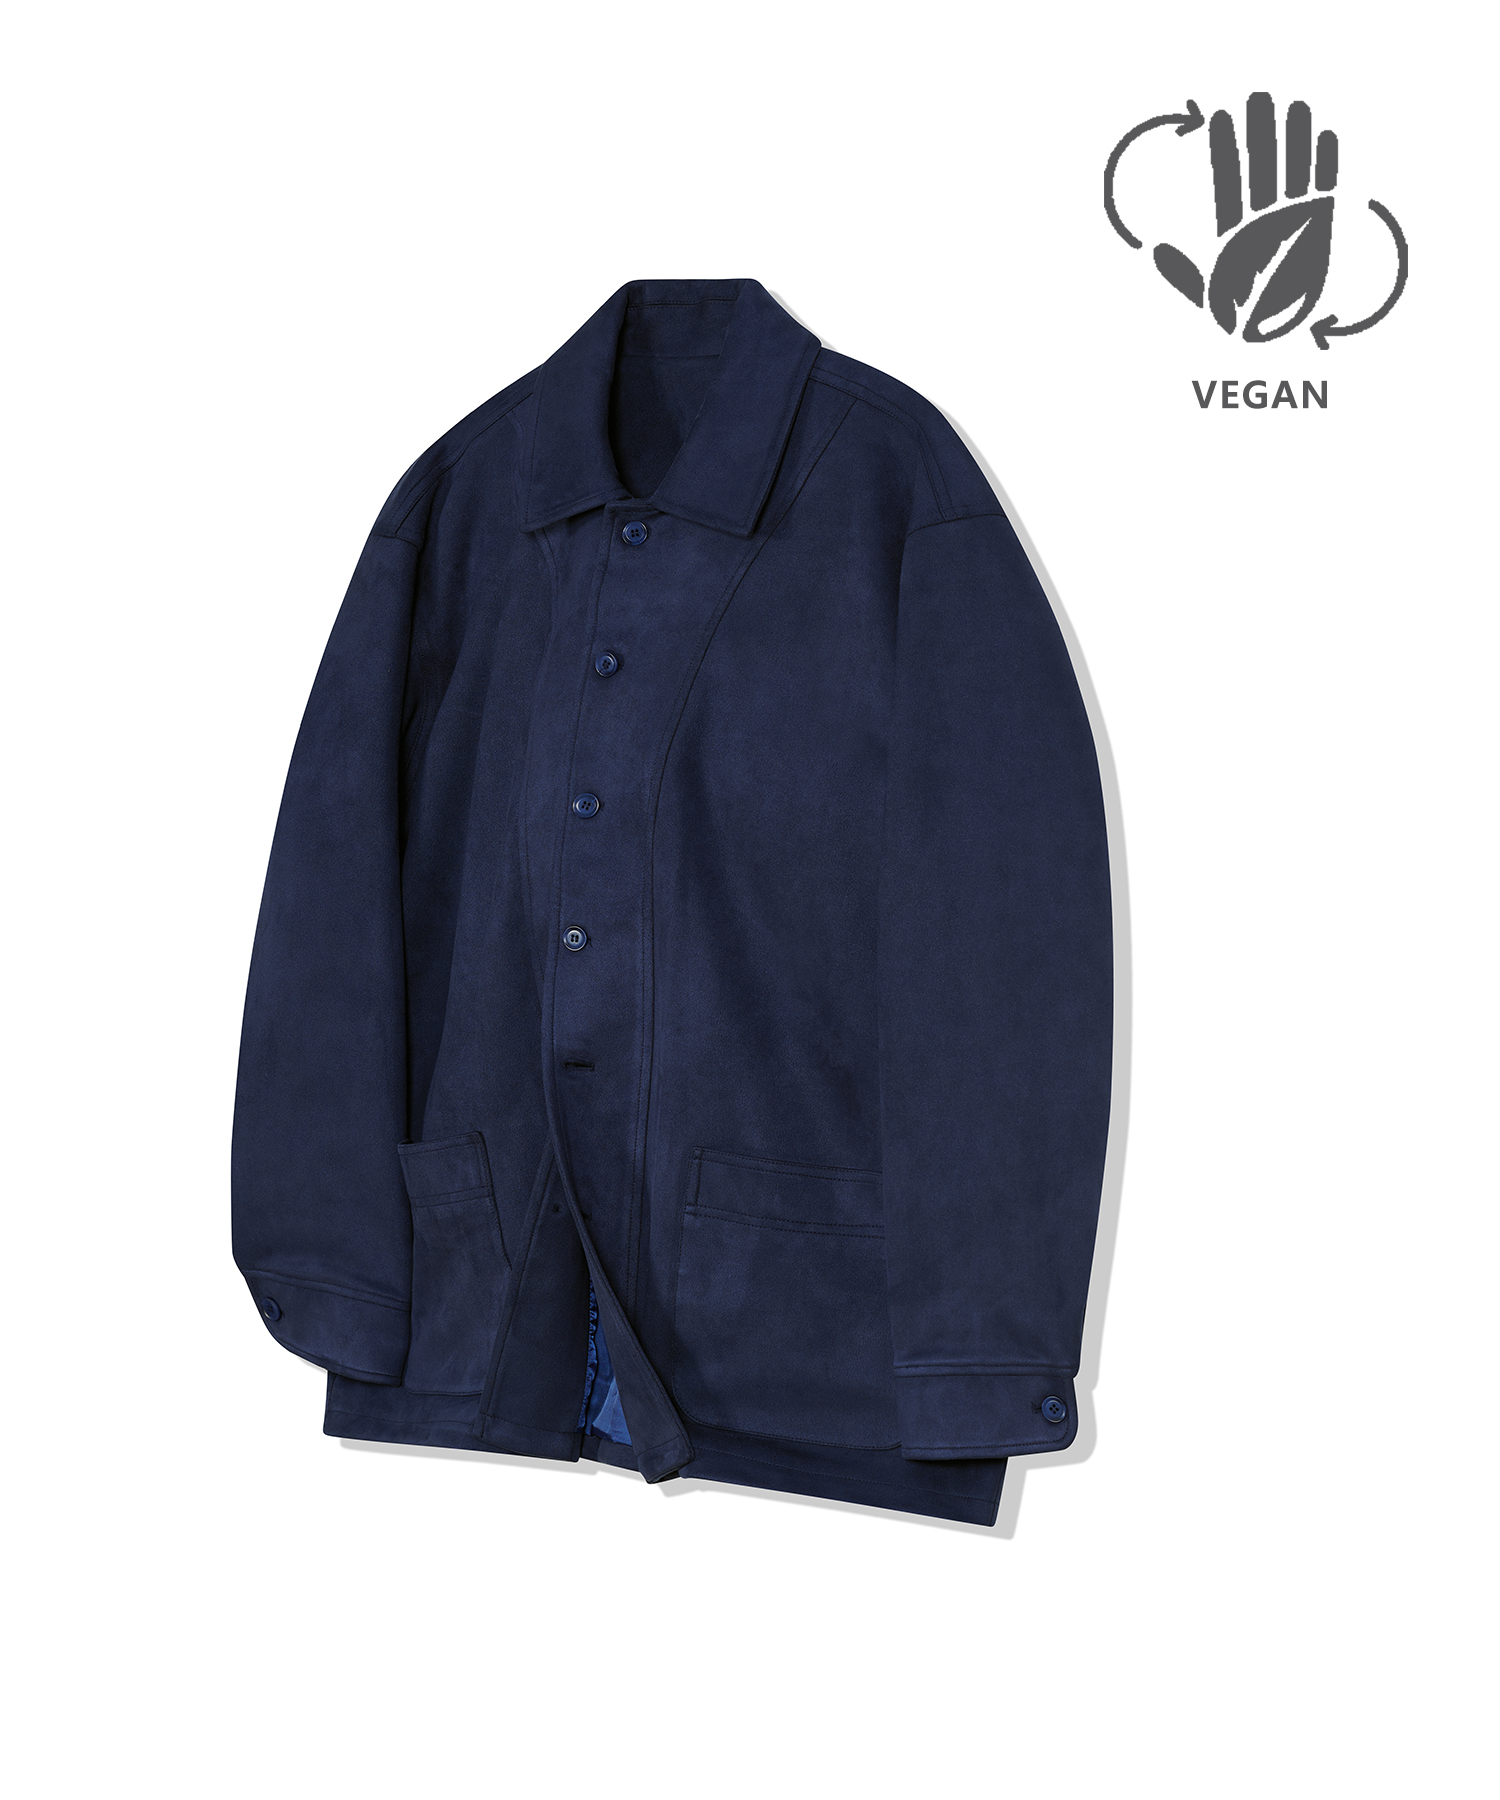 87-STAN033 [Vegan Suede] Bold Y-Stitch Suede Jacket Navy